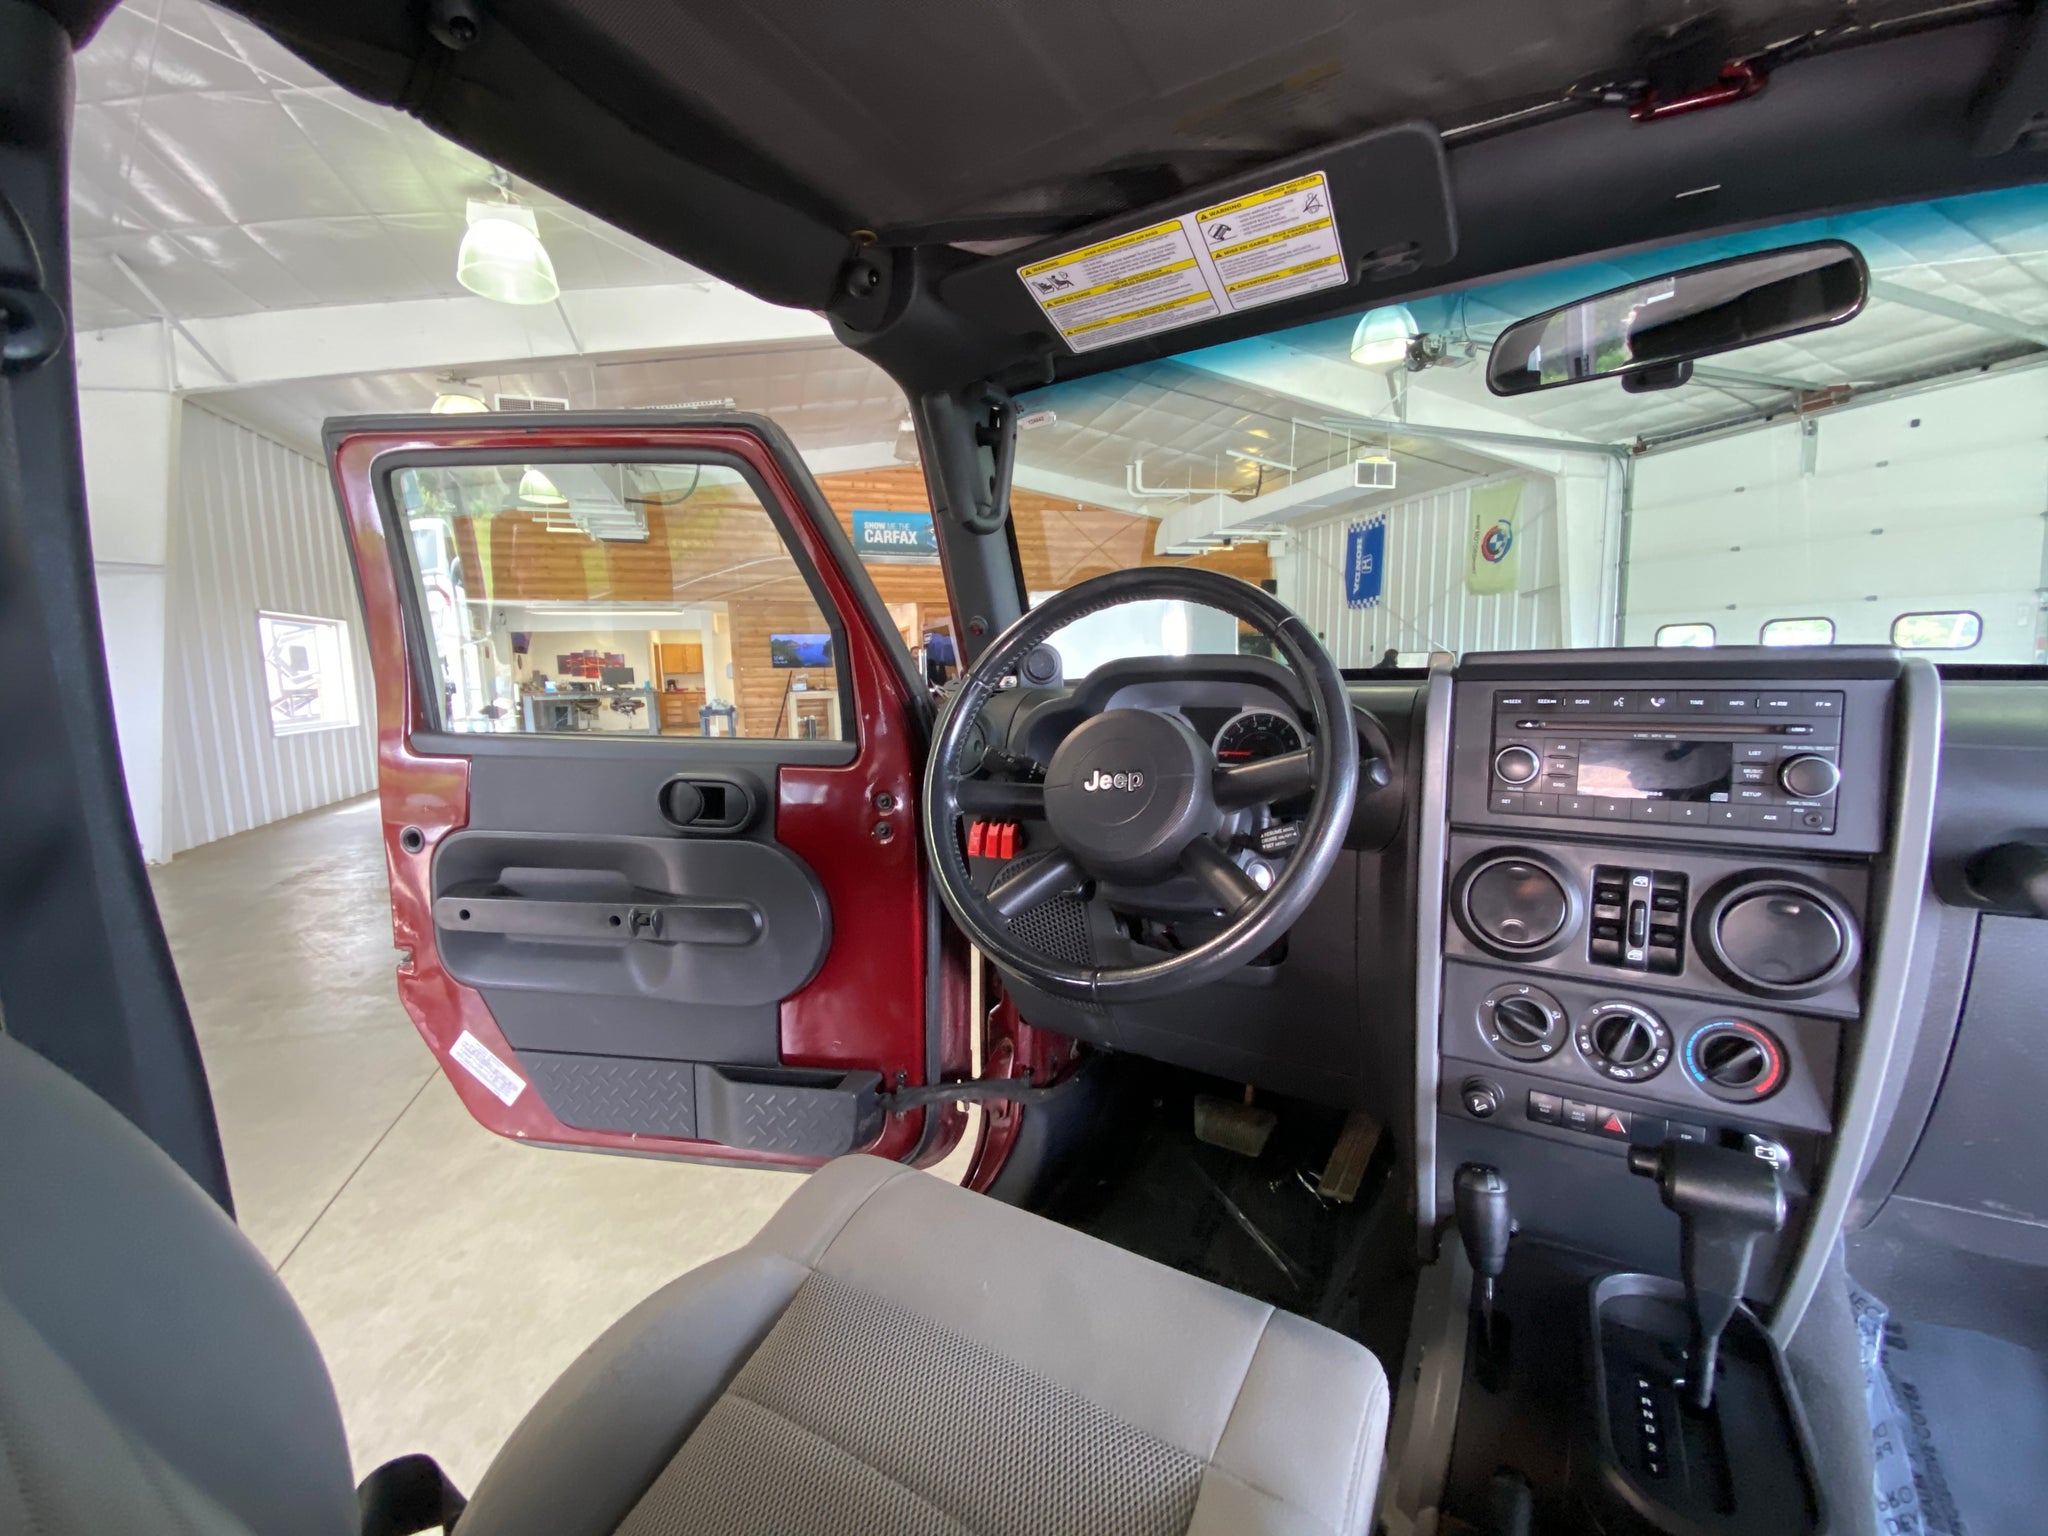 2008 Jeep Wrangler Unlimited Rubicon - ShiftedMN